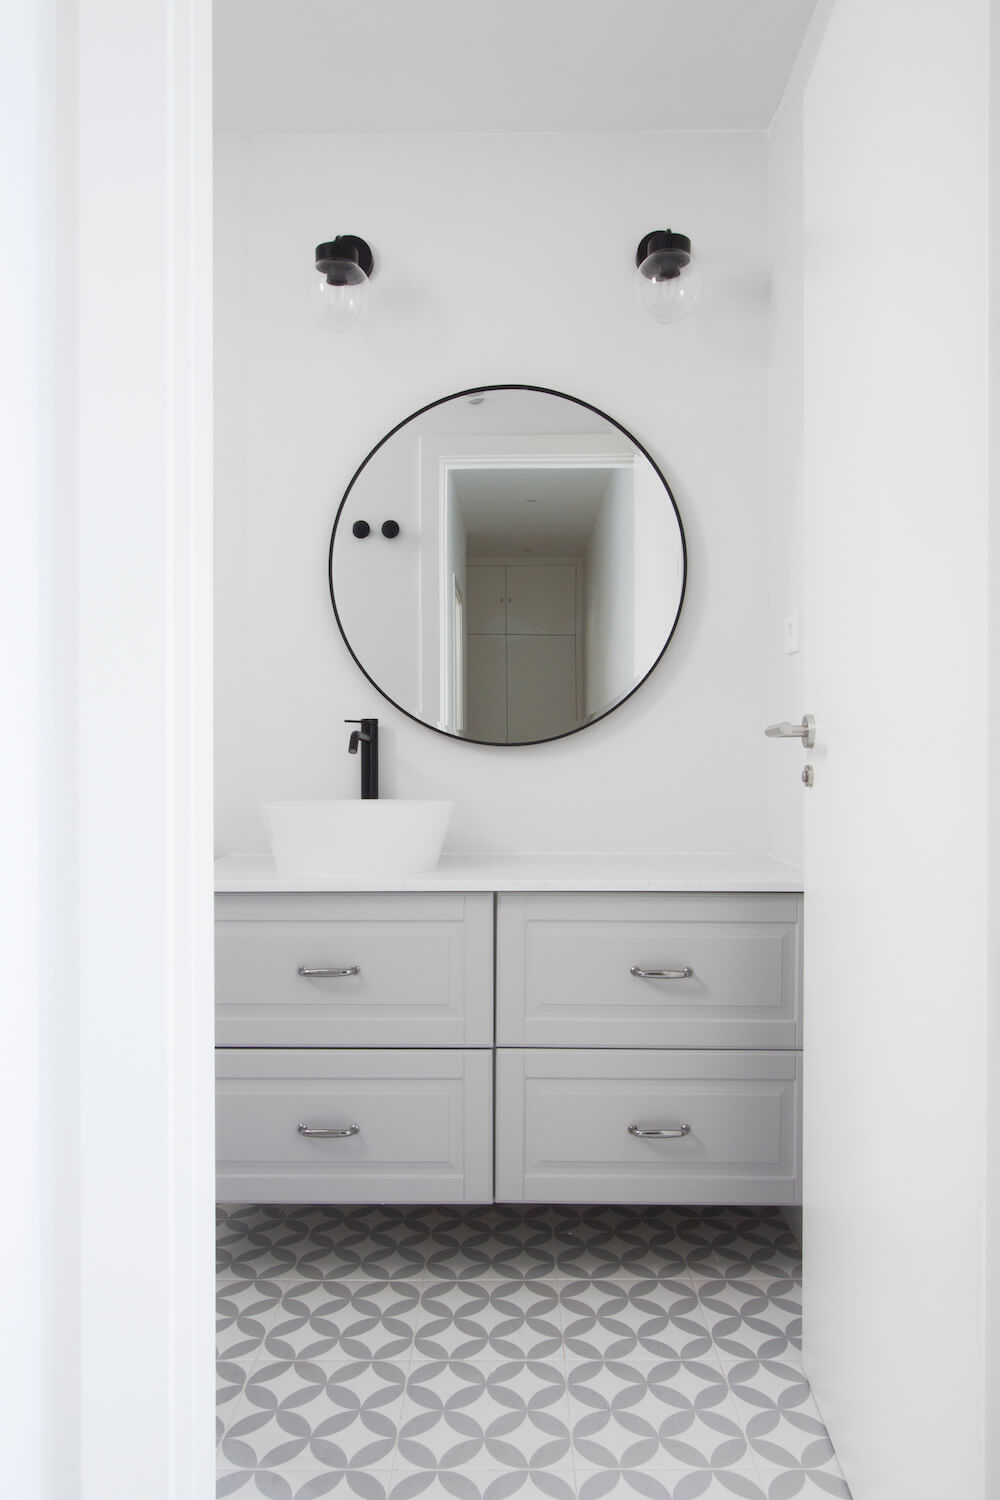 Baño de cortesía moderno en gris, blanco y negro. Proyecto de R de Room.